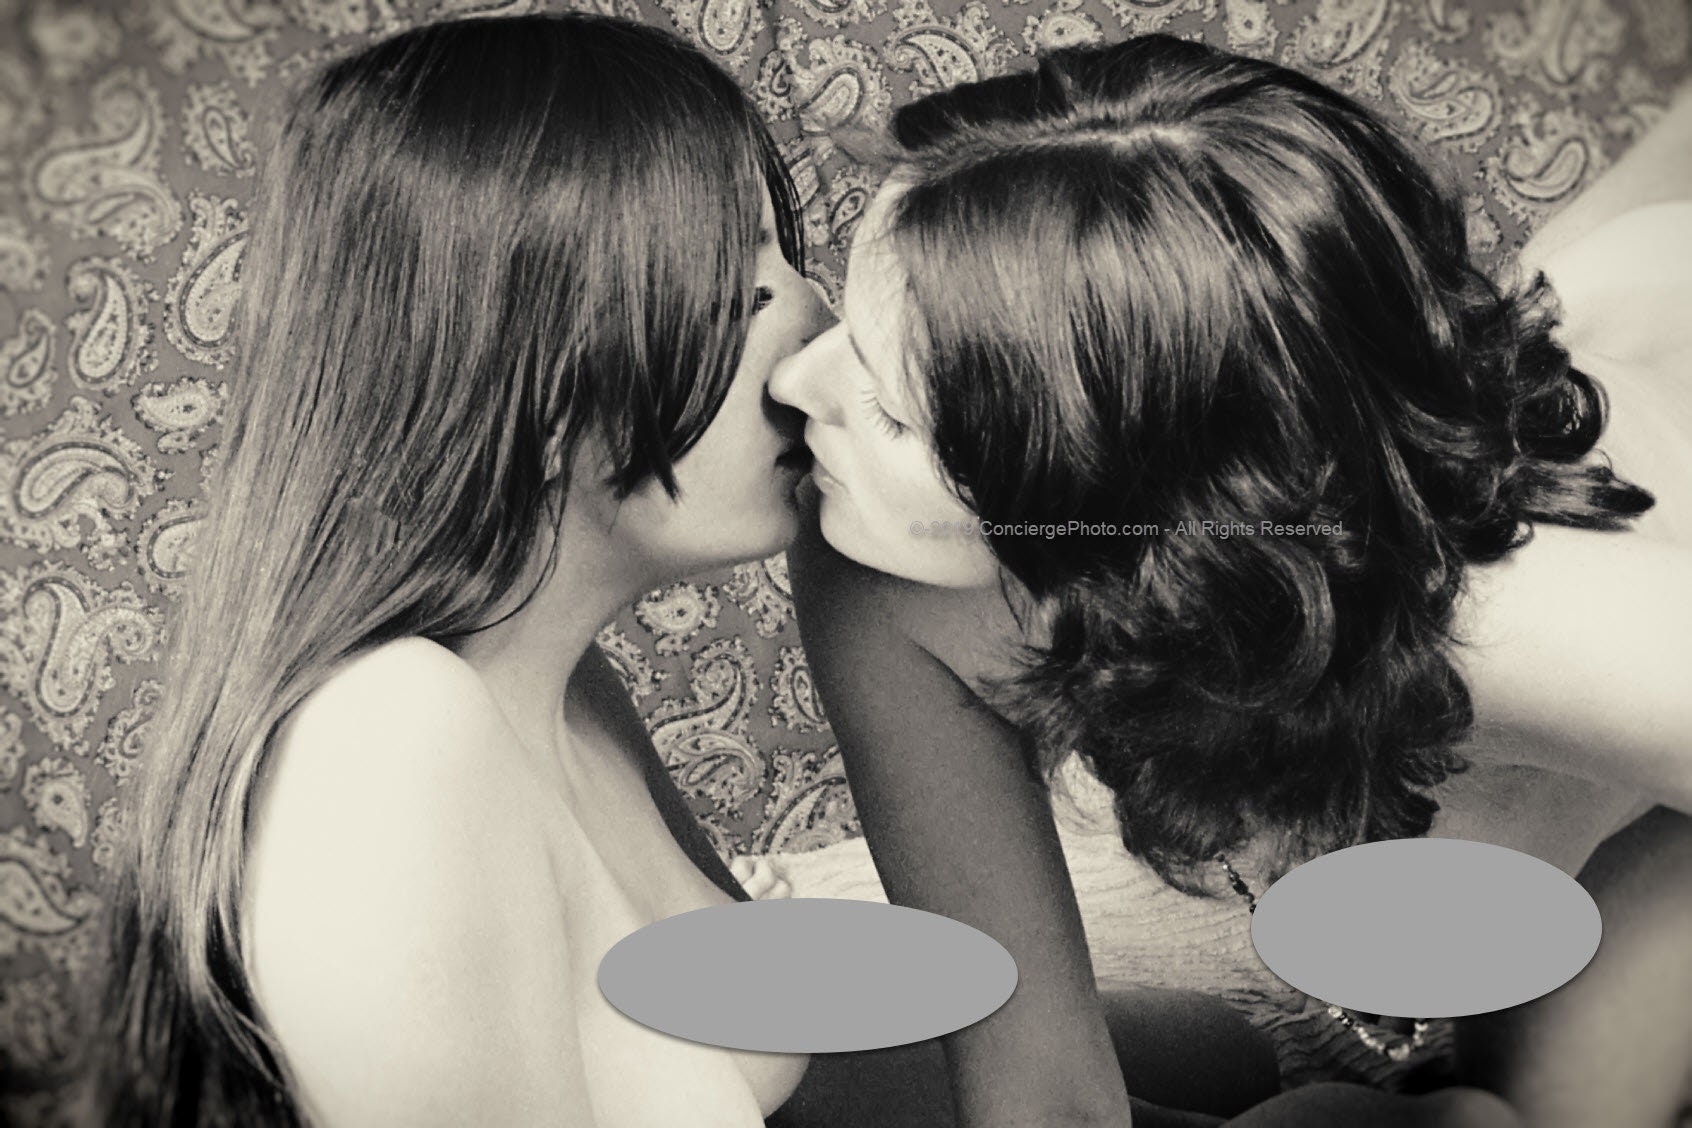 Vintage Mature 1970s Risque Photo 8x12 Bisexual Lesbian Couple pic photo